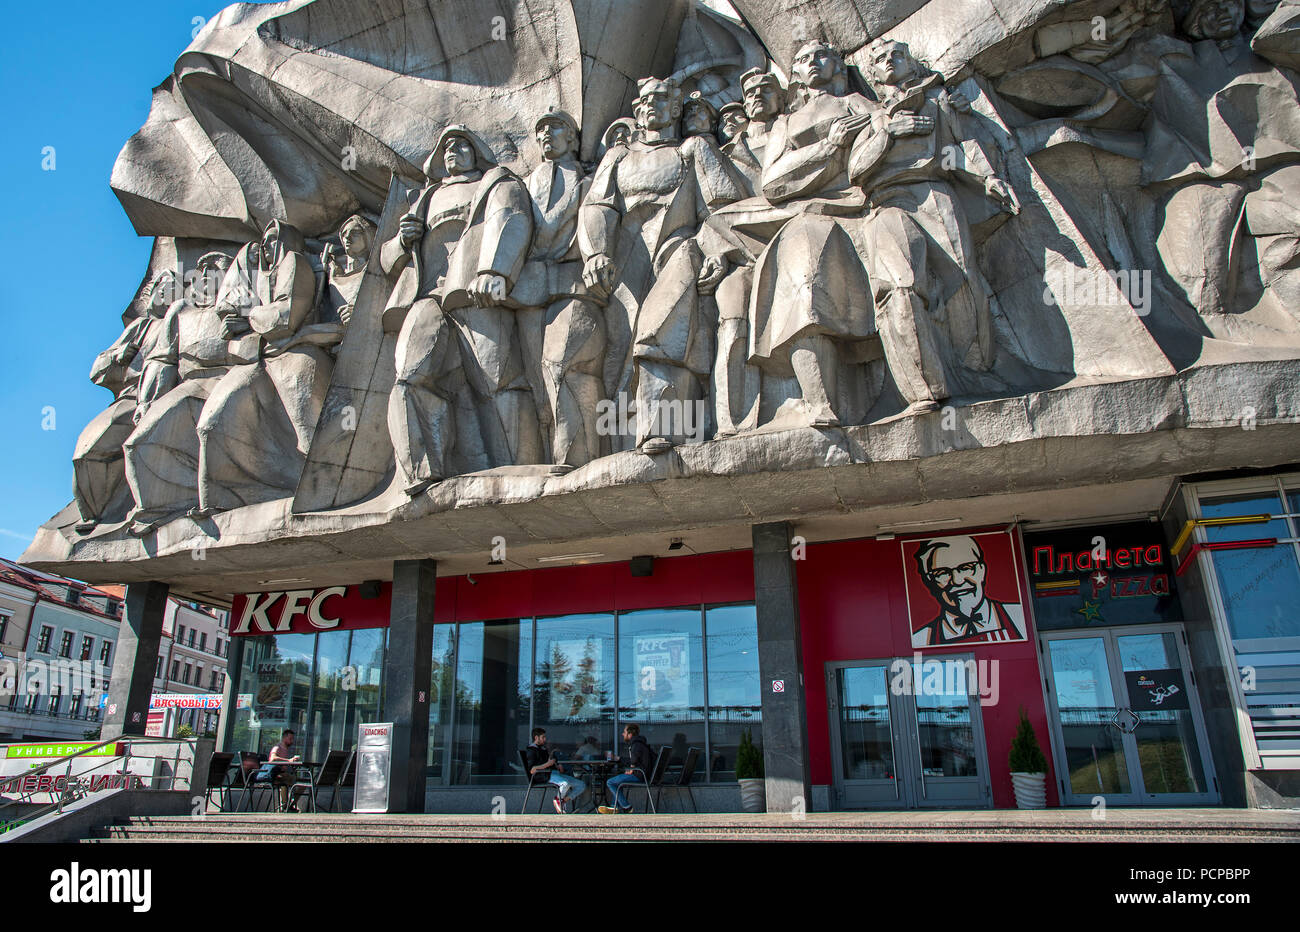 Le réalisme socialiste soviétique avec KFC sculpture ci-dessus. Minsk, Bélarus Banque D'Images